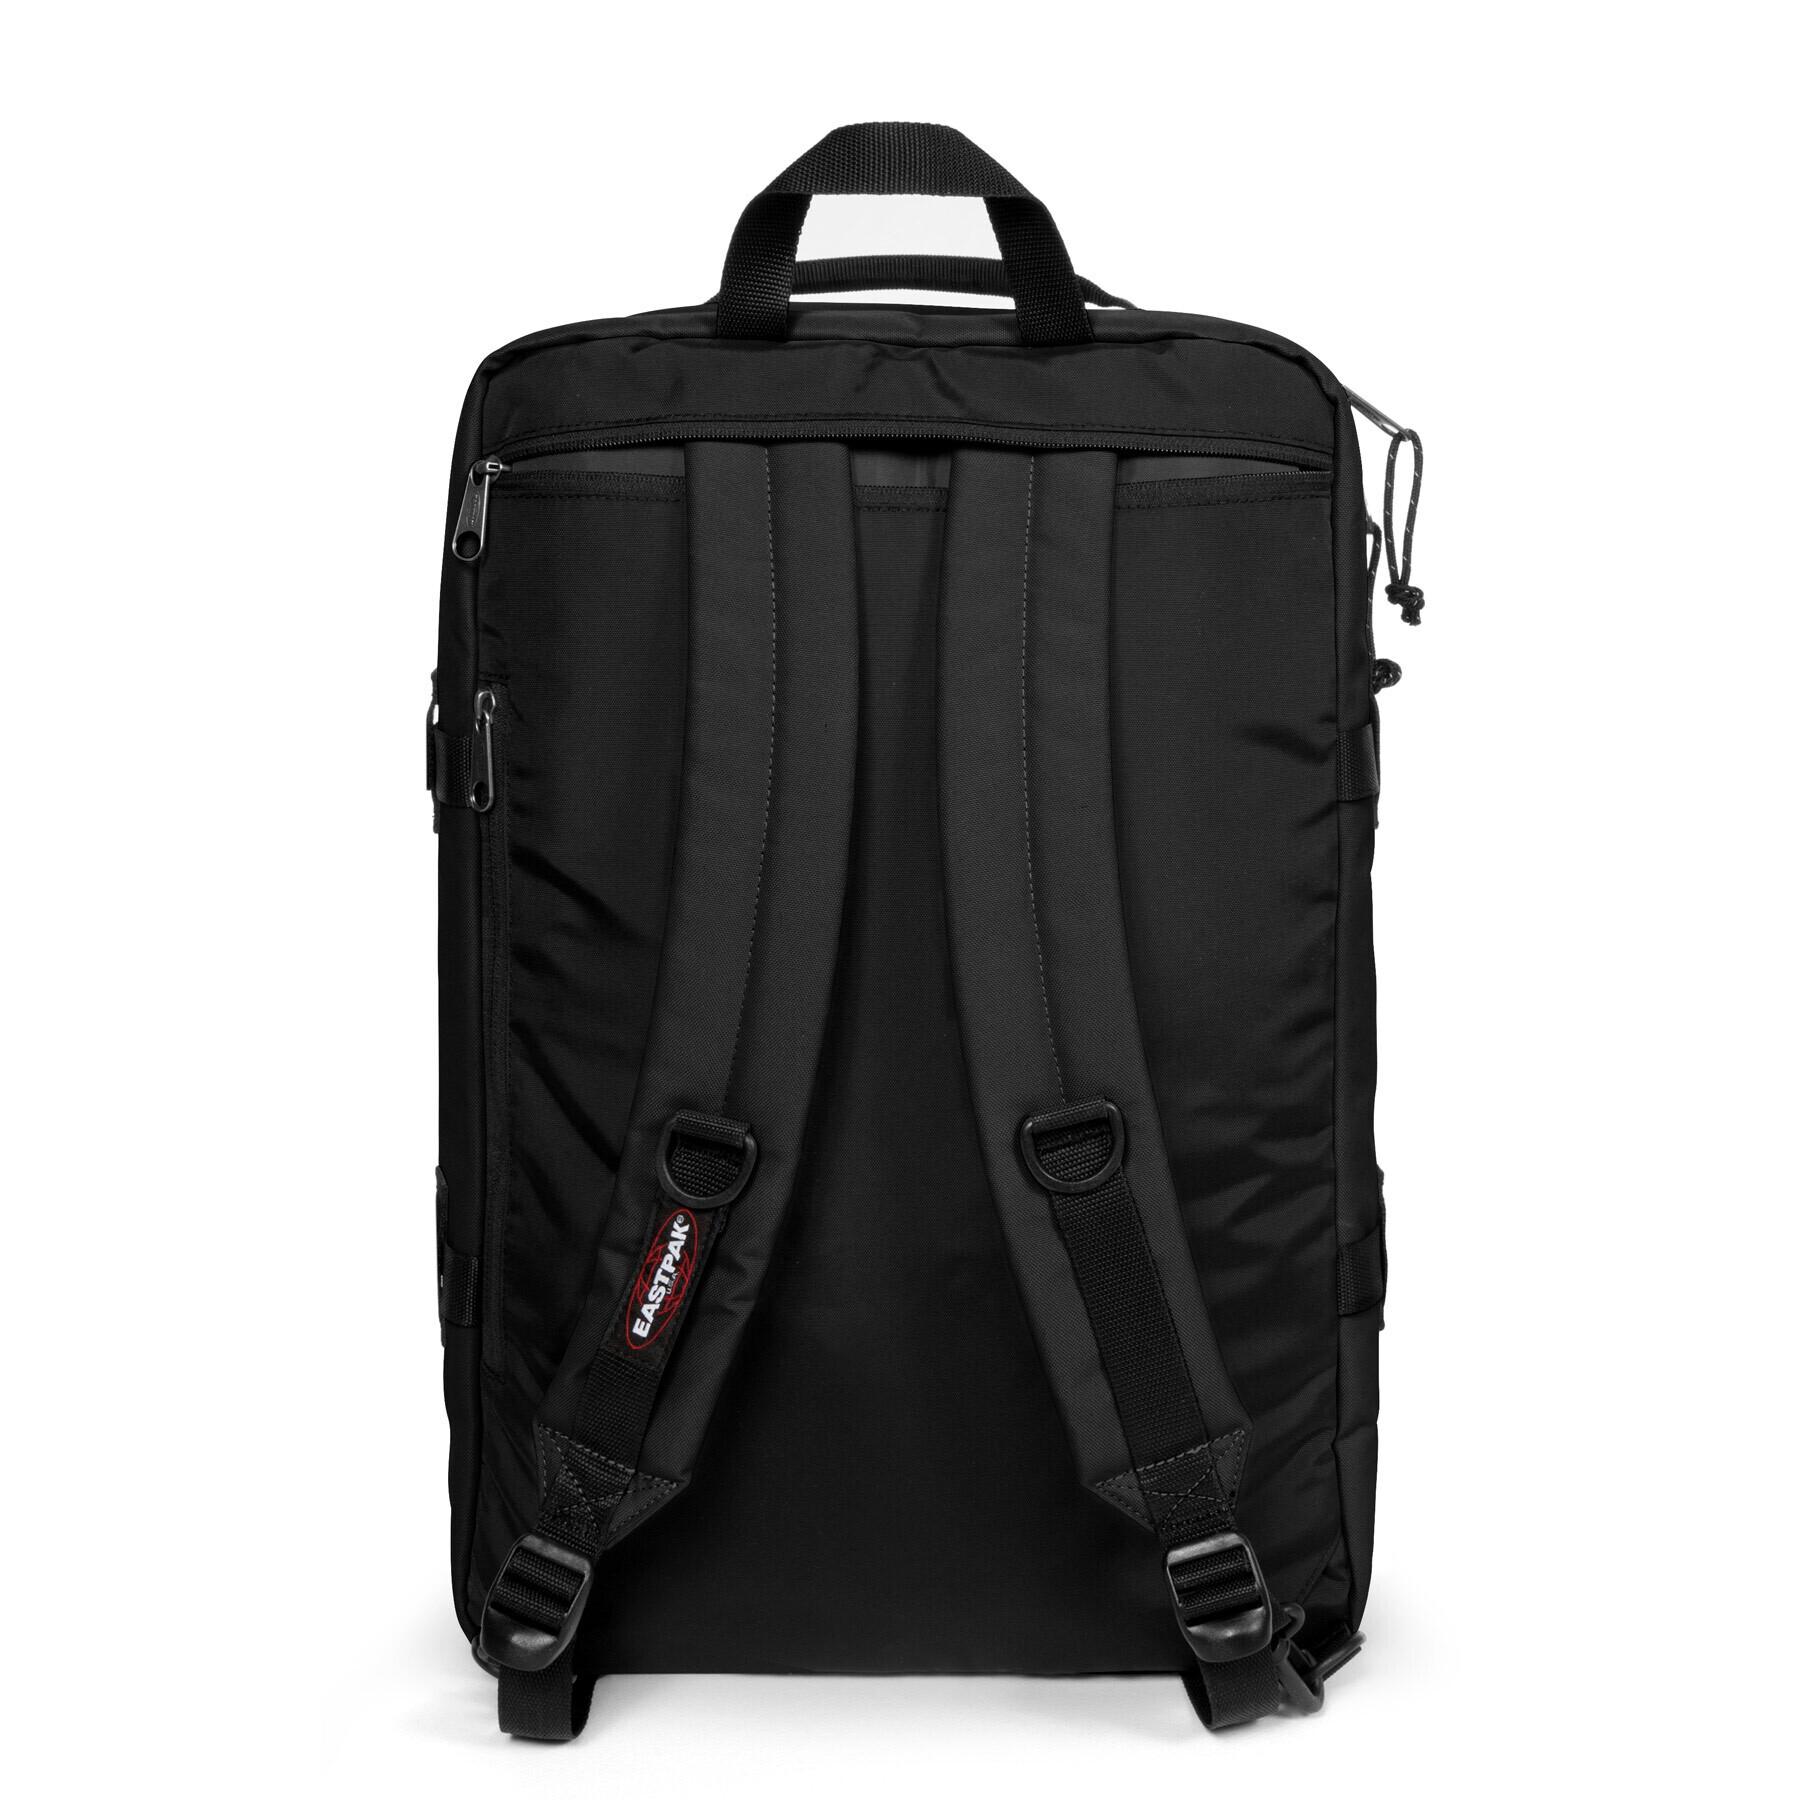 Backpack Eastpak Travelpack